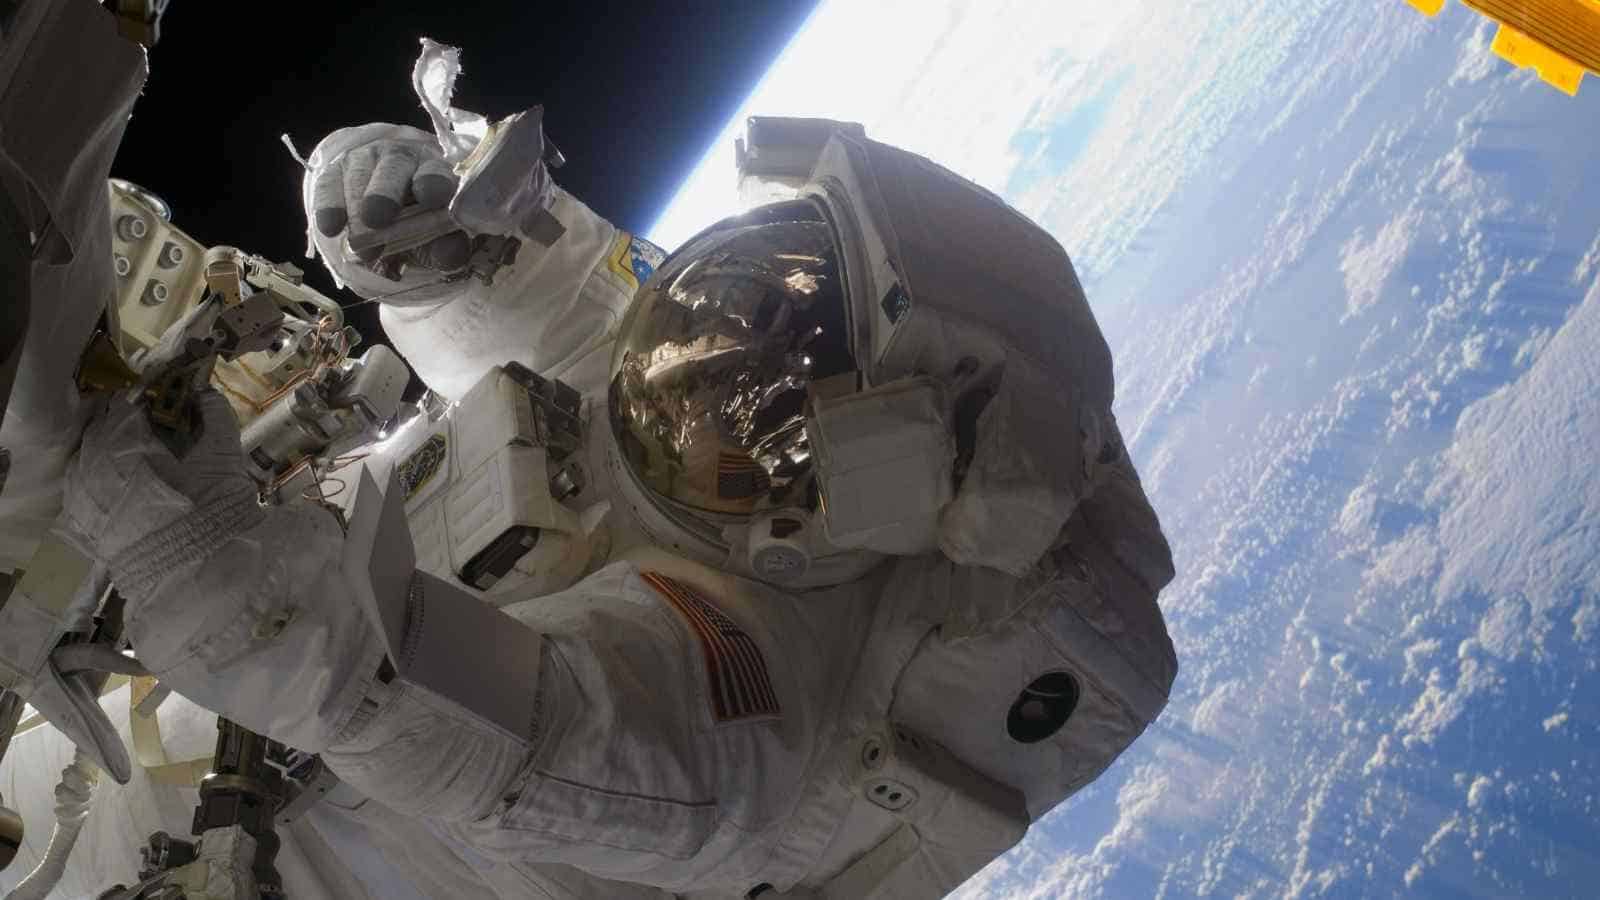 Gli astronauti nell'ISS sperimentano sempre una sensazione di leggerezza a caduta libera, chiamata microgravità